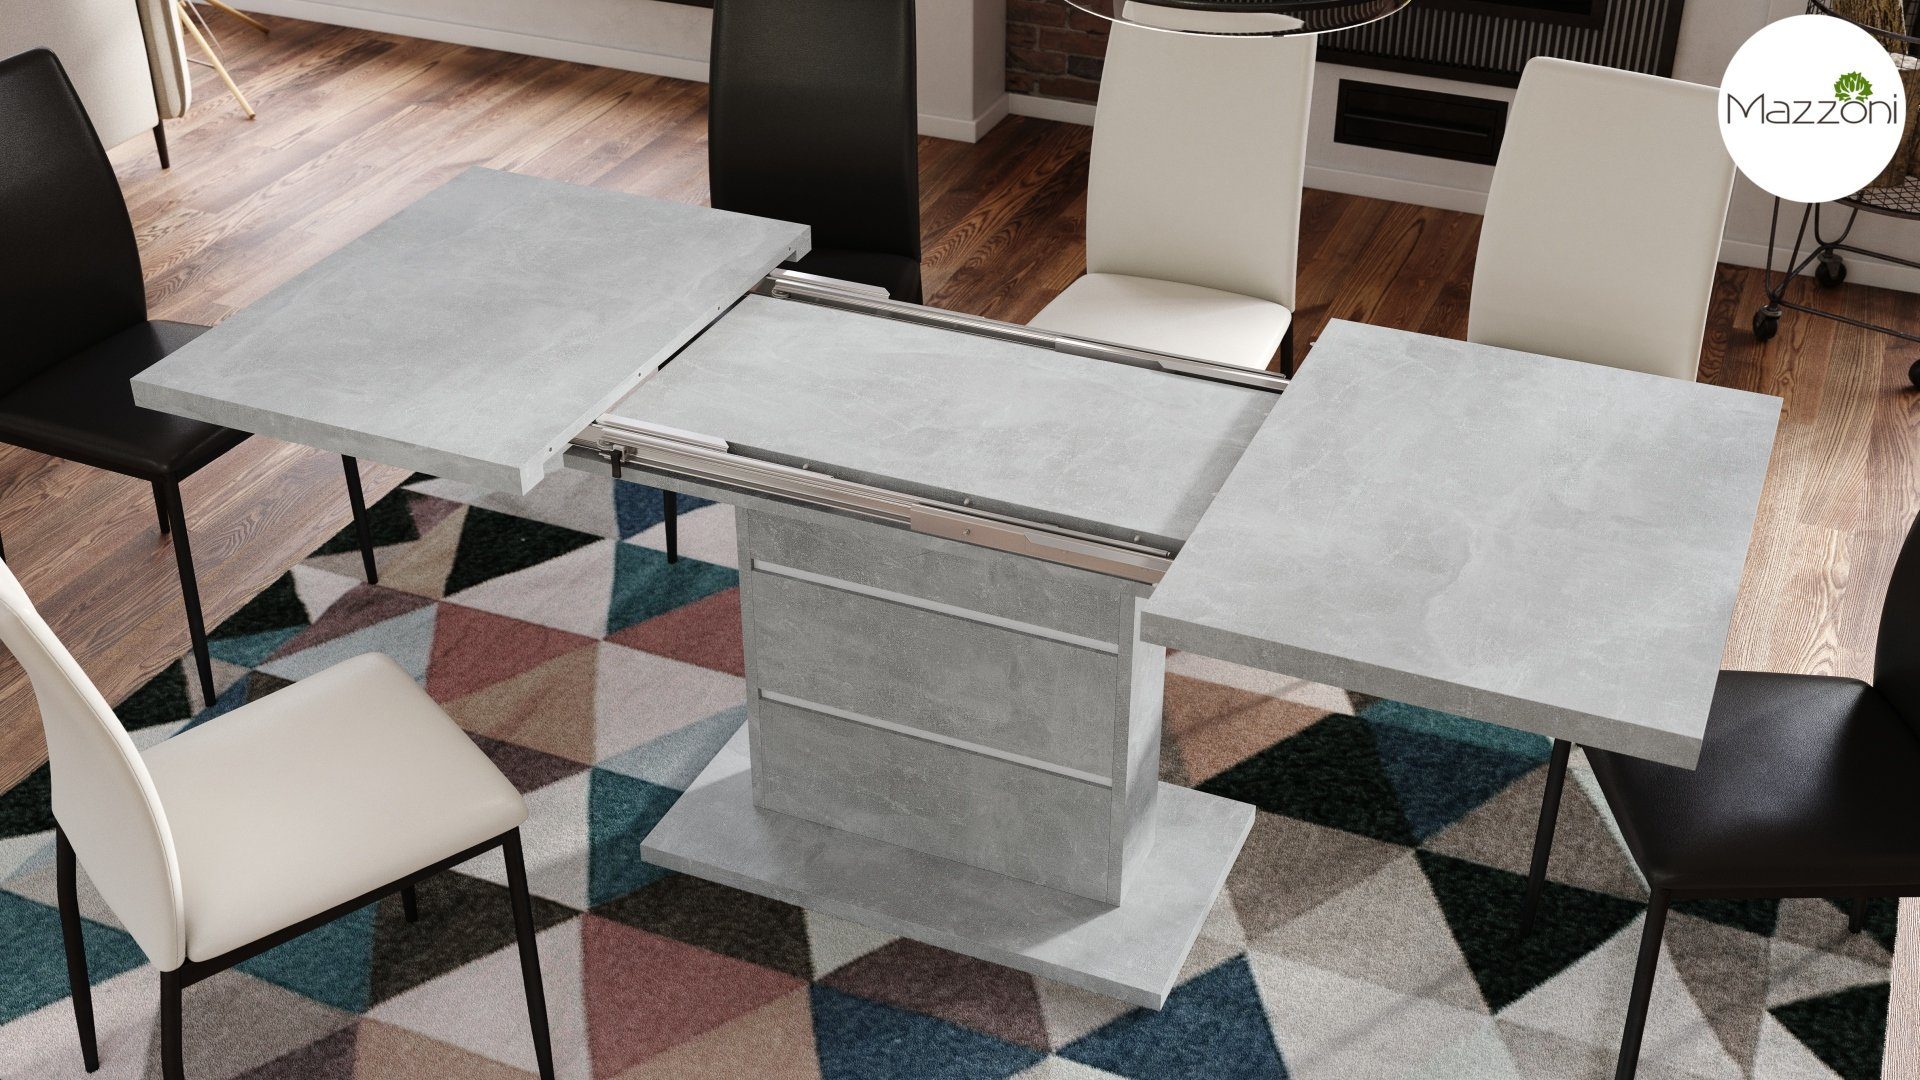 cm 200 Weiß Piano Beton Design Esstisch ausziehbar Tisch 120 matt / Mazzoni - Esstisch Weiß Beton